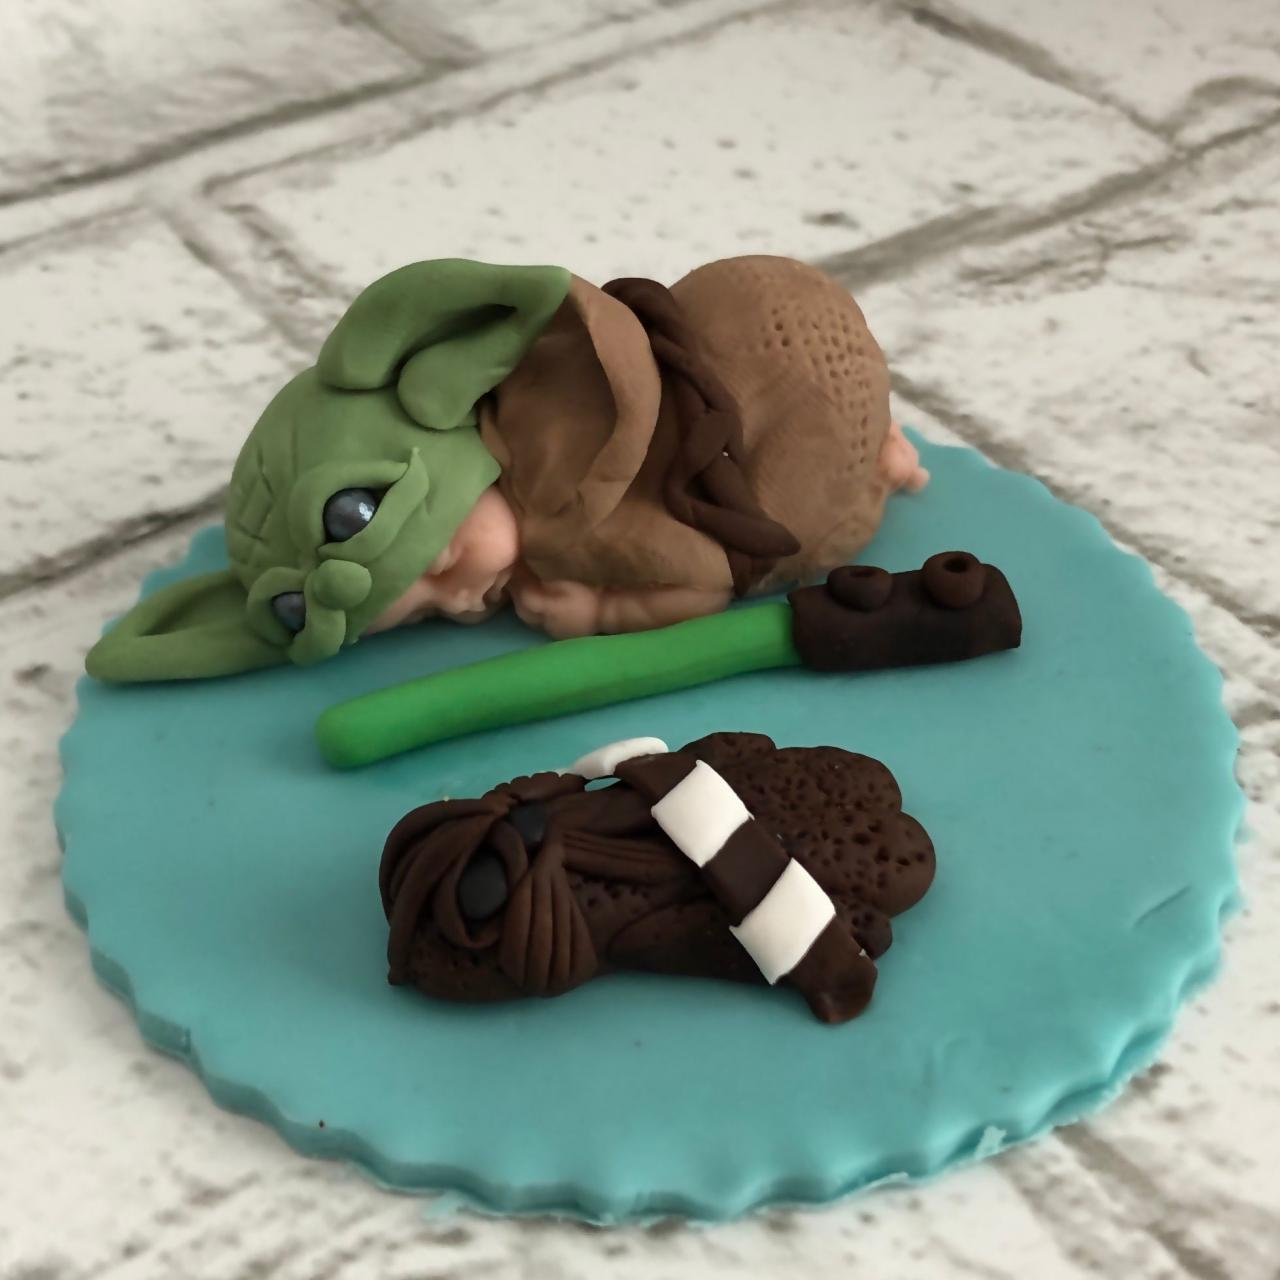 BABY YODA BABY Shower Inspired Cake topper / Baby Yoda / Star Wars / Yoda / baby / cake topper / fondant / fondant cake topper